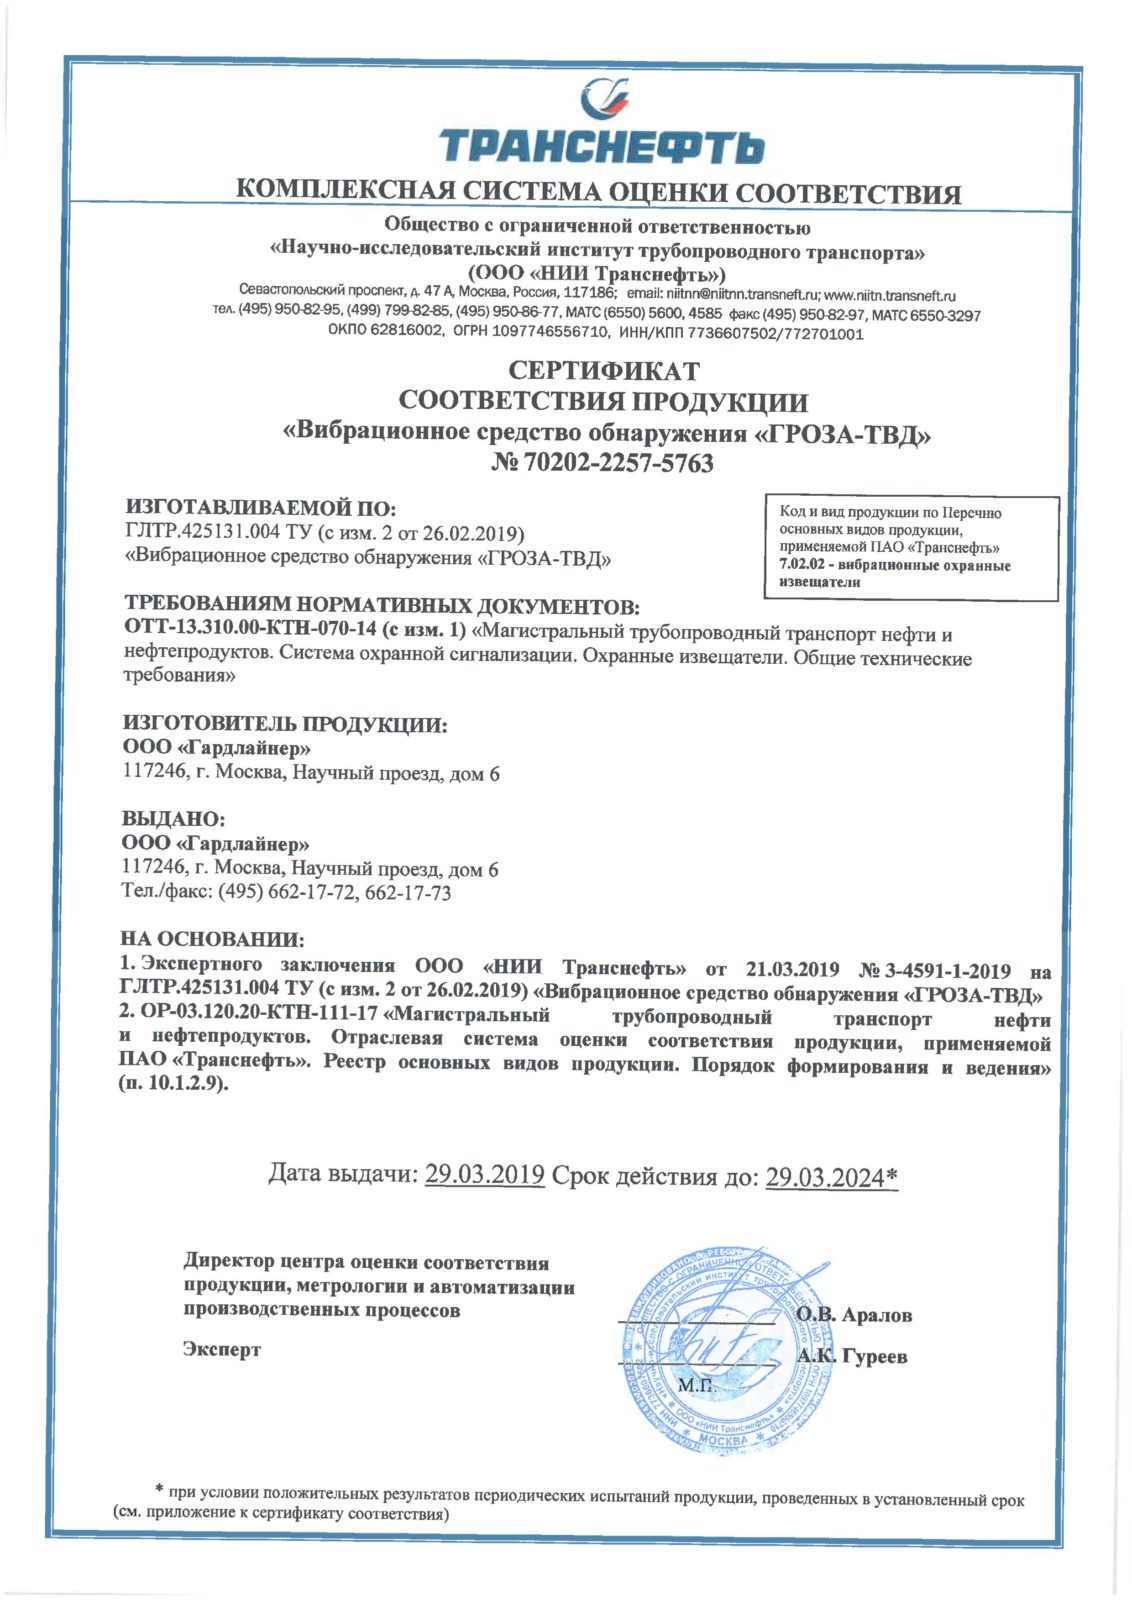 Получен сертификат соответствия ВСО "ГРОЗА-ТВД" требованиям нормативных документов ПАО "Транснефть"